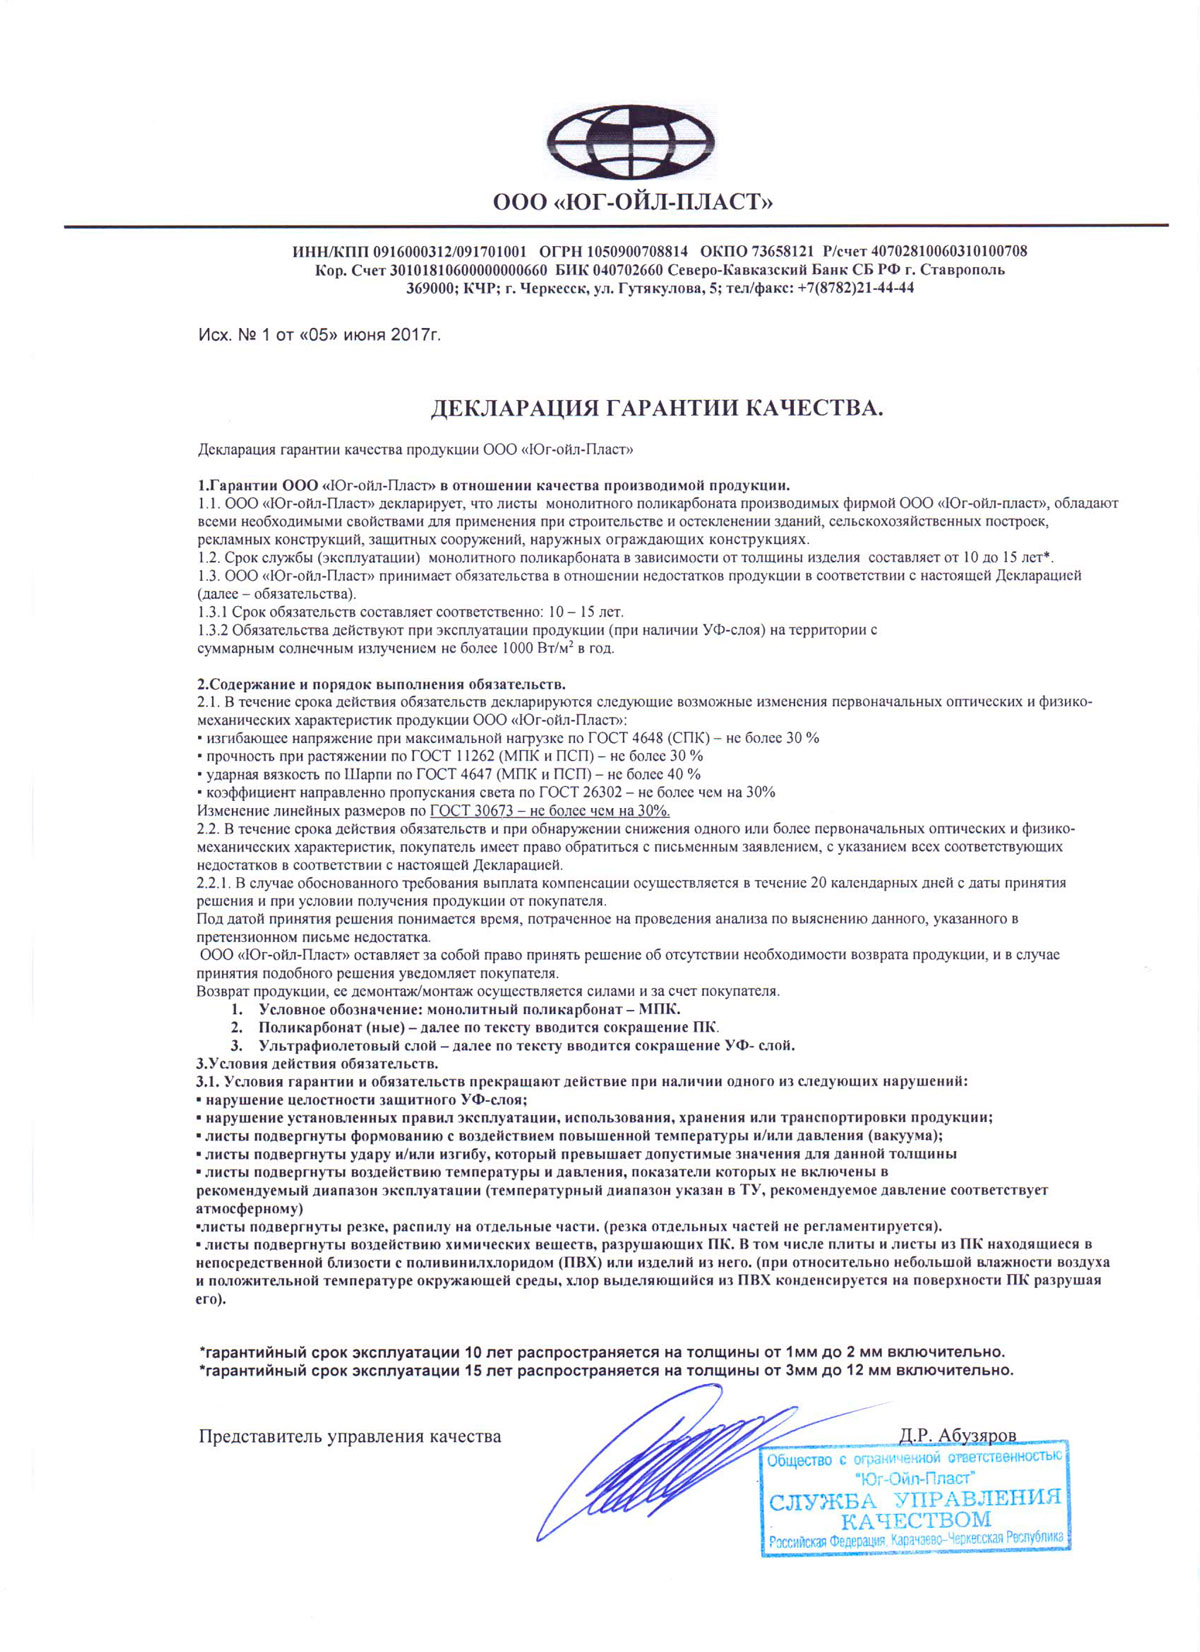 Юг-ойл-пласт декларация гарантии качества монолитного поликарбоната